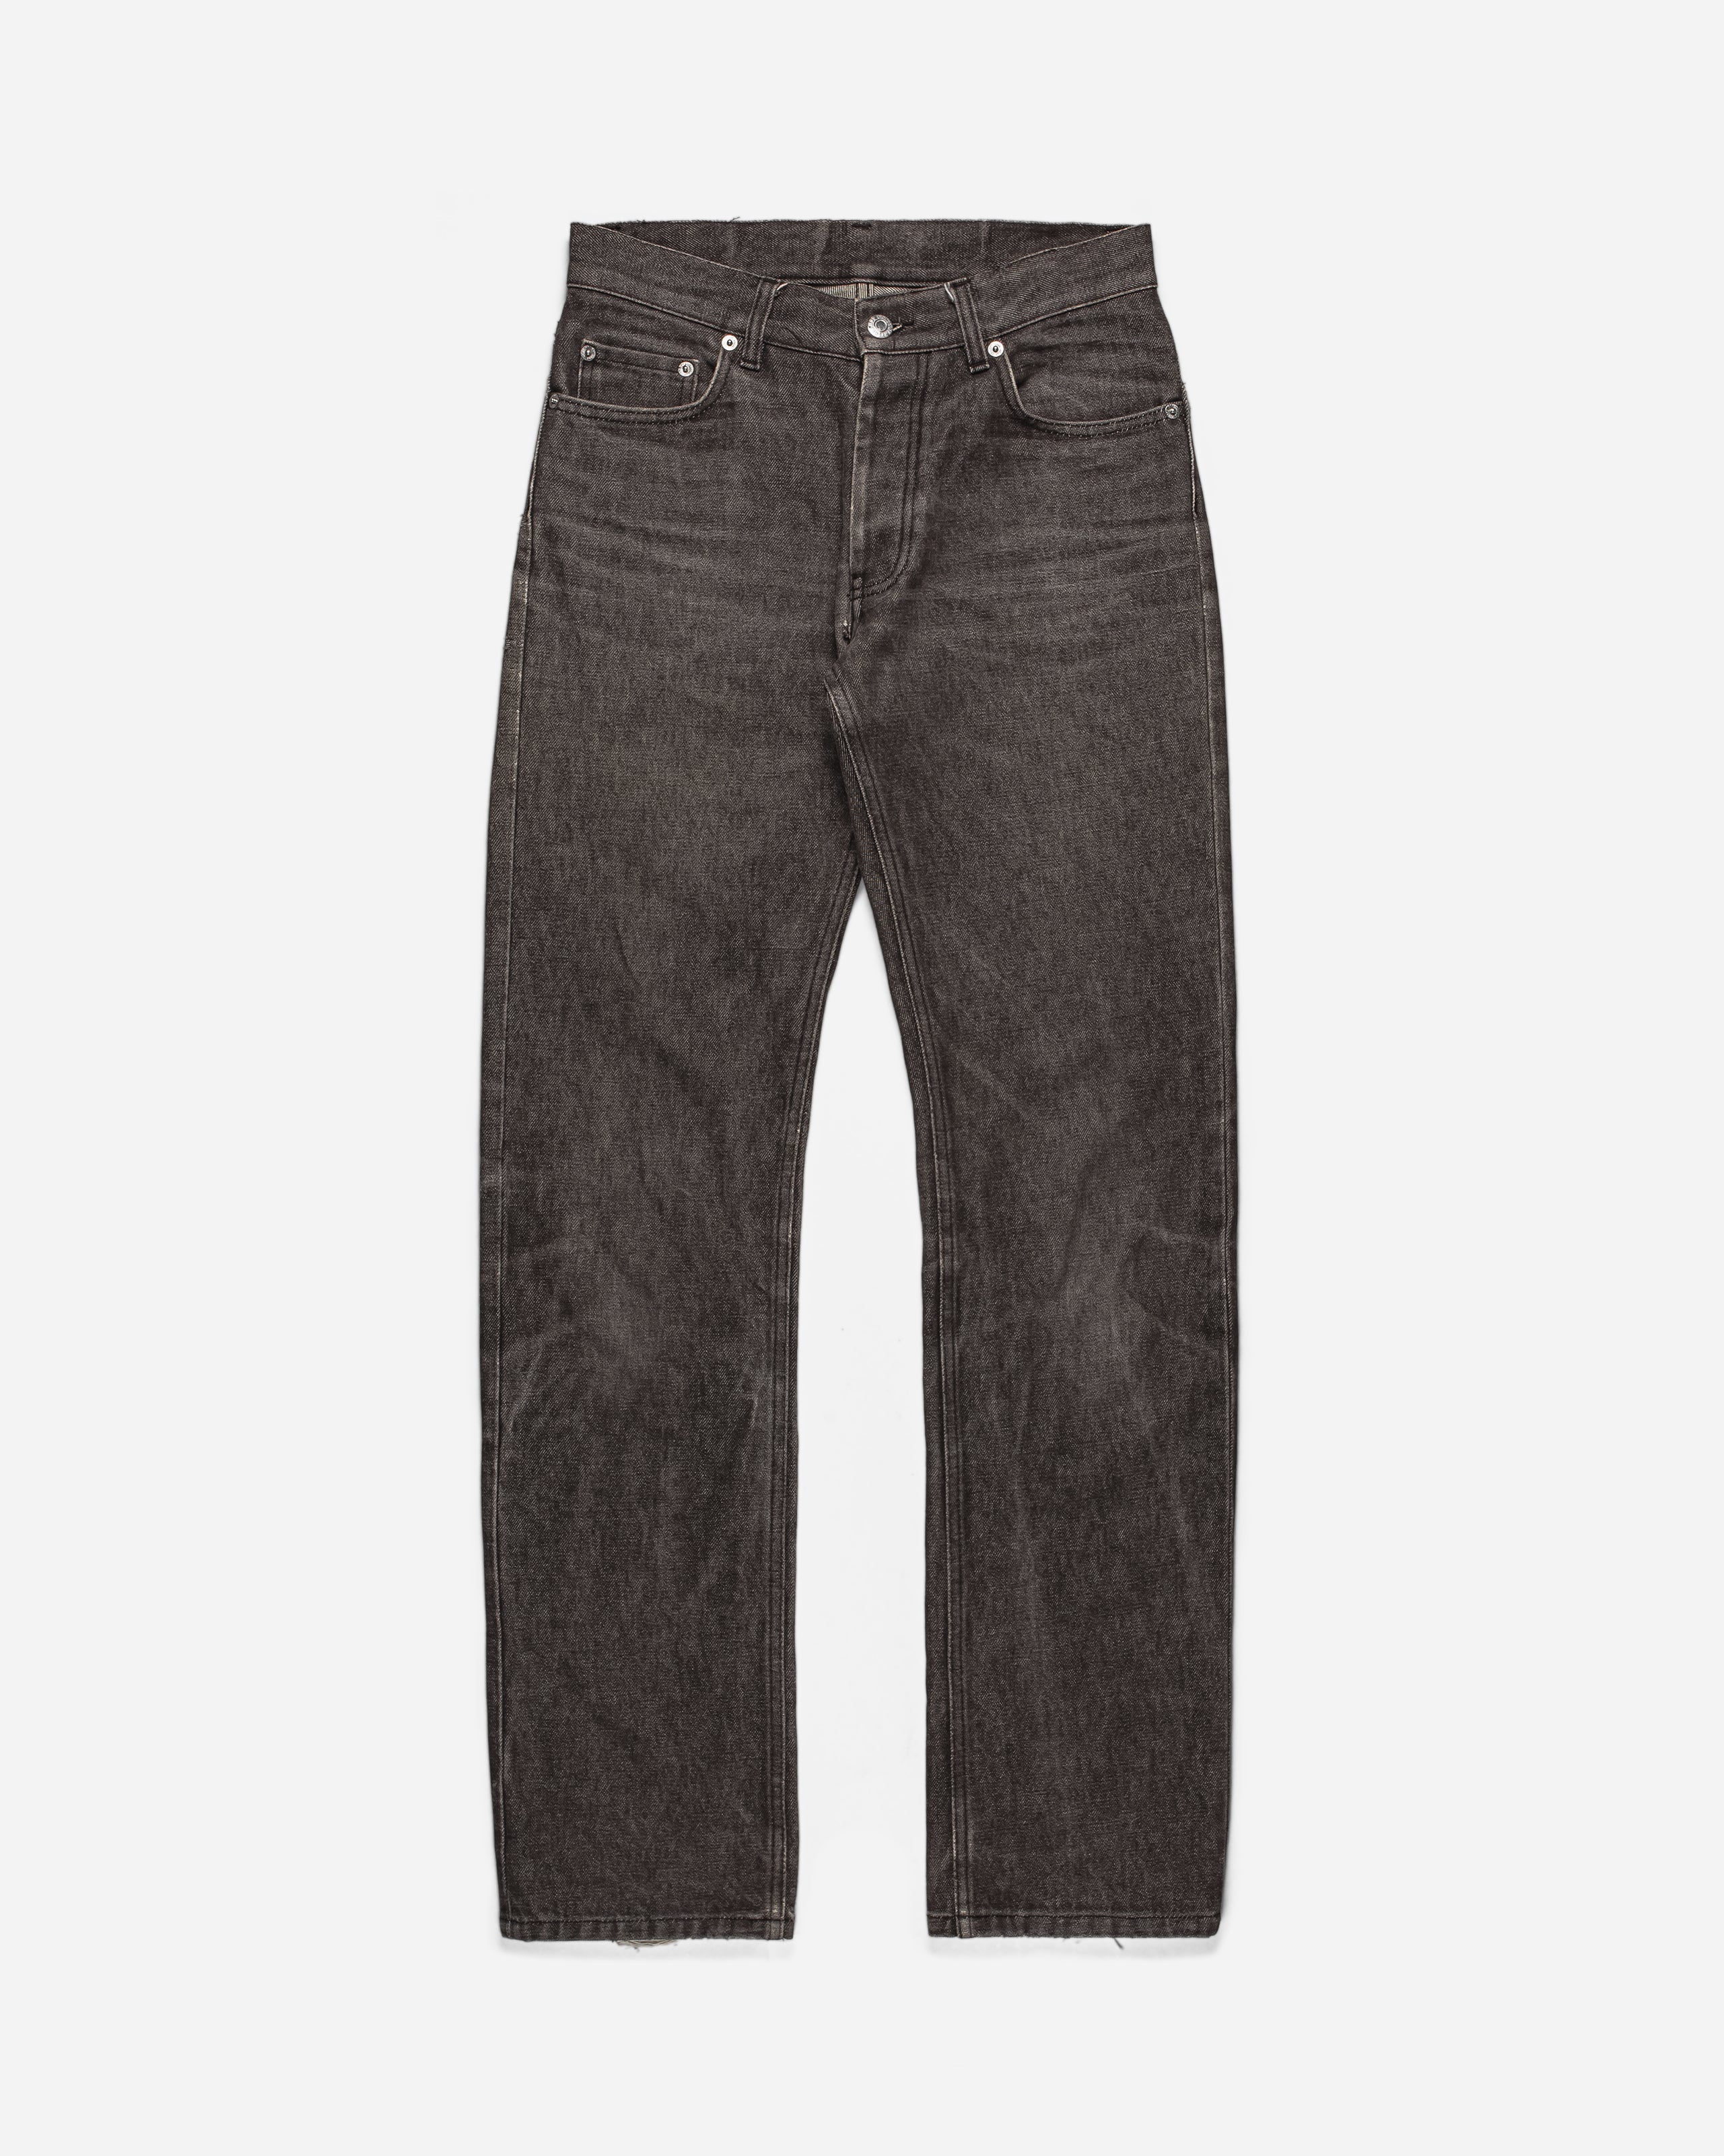 Helmut Lang Brown Denim Jeans - 1990s - SILVER LEAGUE